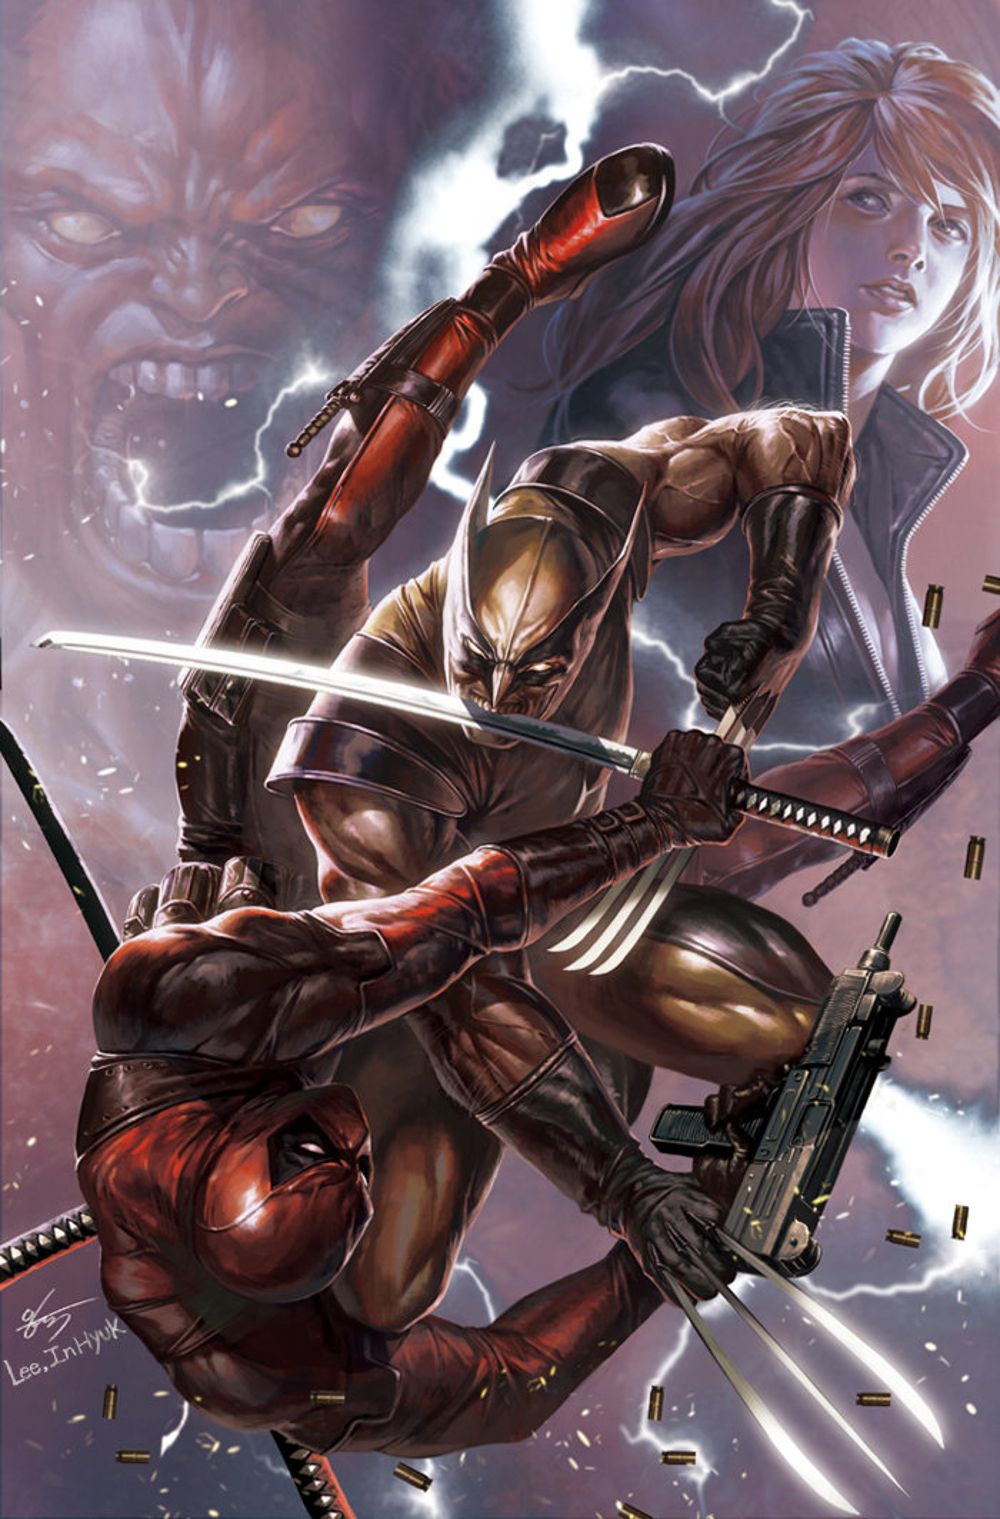 Wolverine vs Deadpool fan art